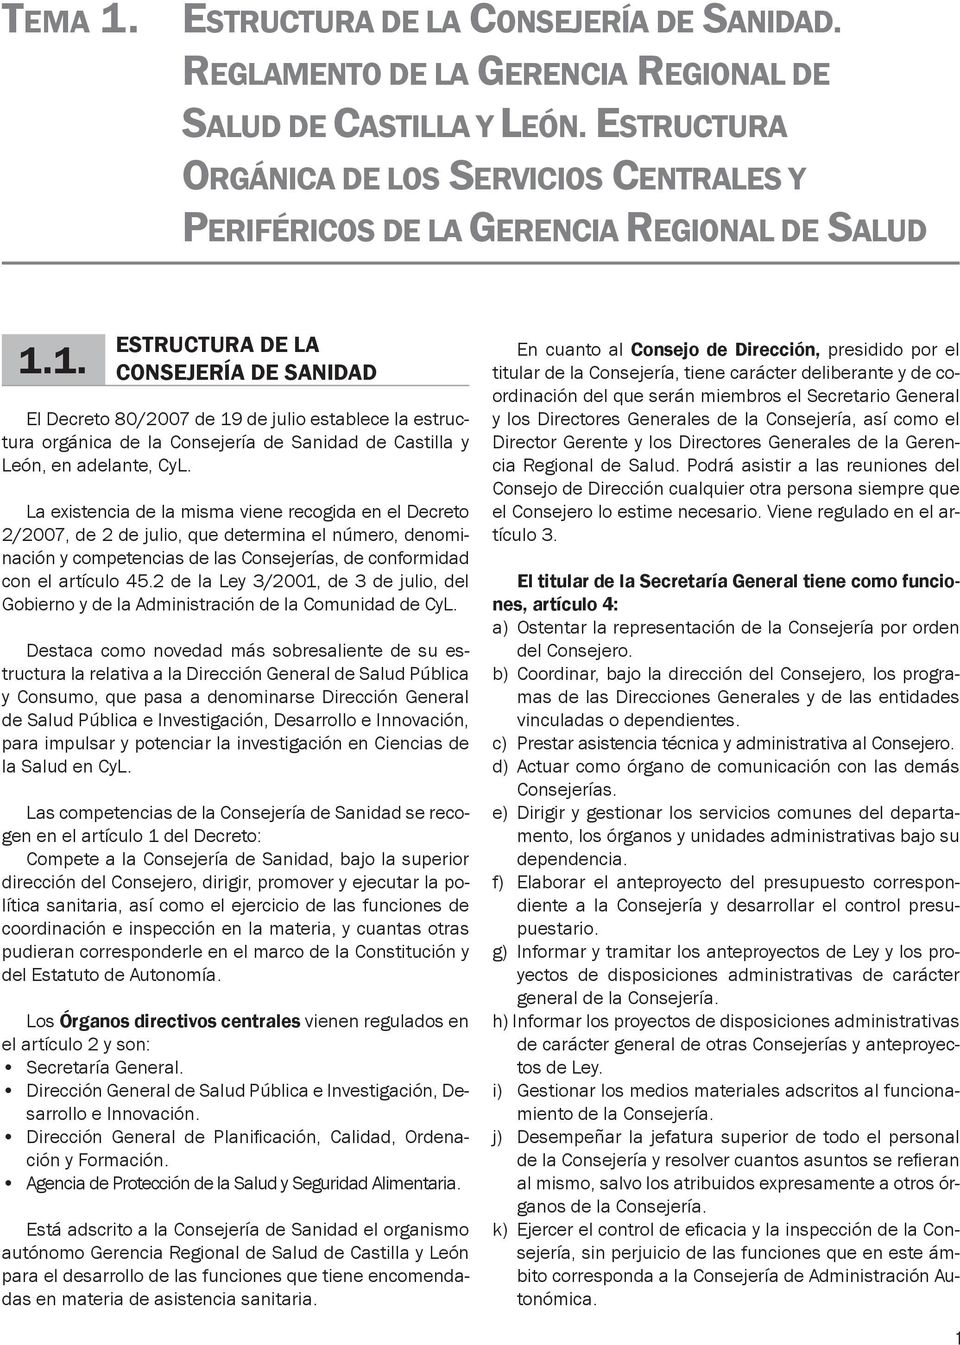 1. ESTRUCTURA DE LA CONSEJERÍA DE SANIDAD El Decreto 80/2007 de 19 de julio establece la estructura orgánica de la Consejería de Sanidad de Castilla y León, en adelante, CyL.